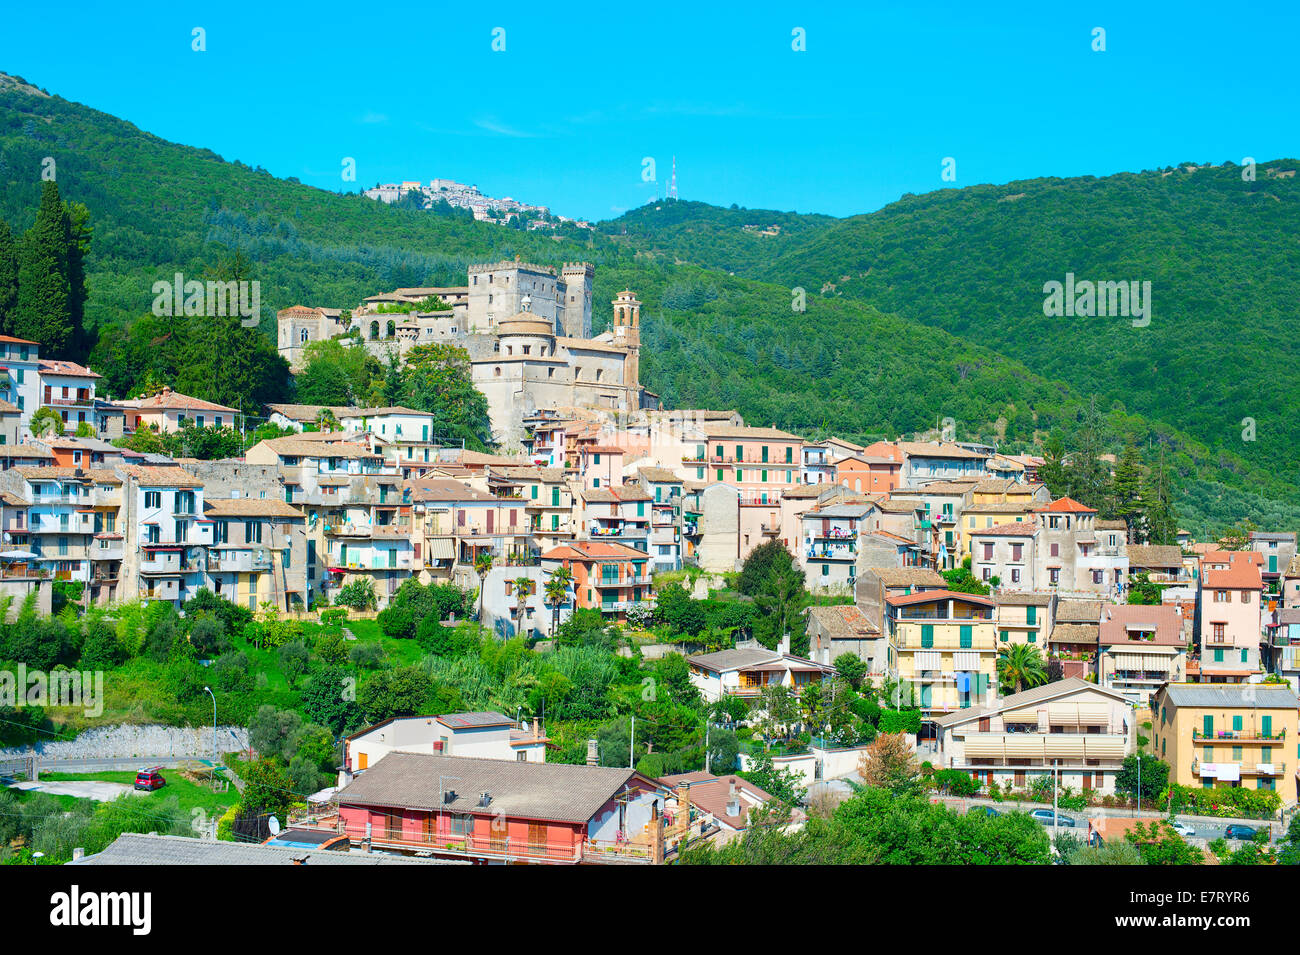 Vista de una ciudad italiana tradicional en las montañas. Italia Foto de stock